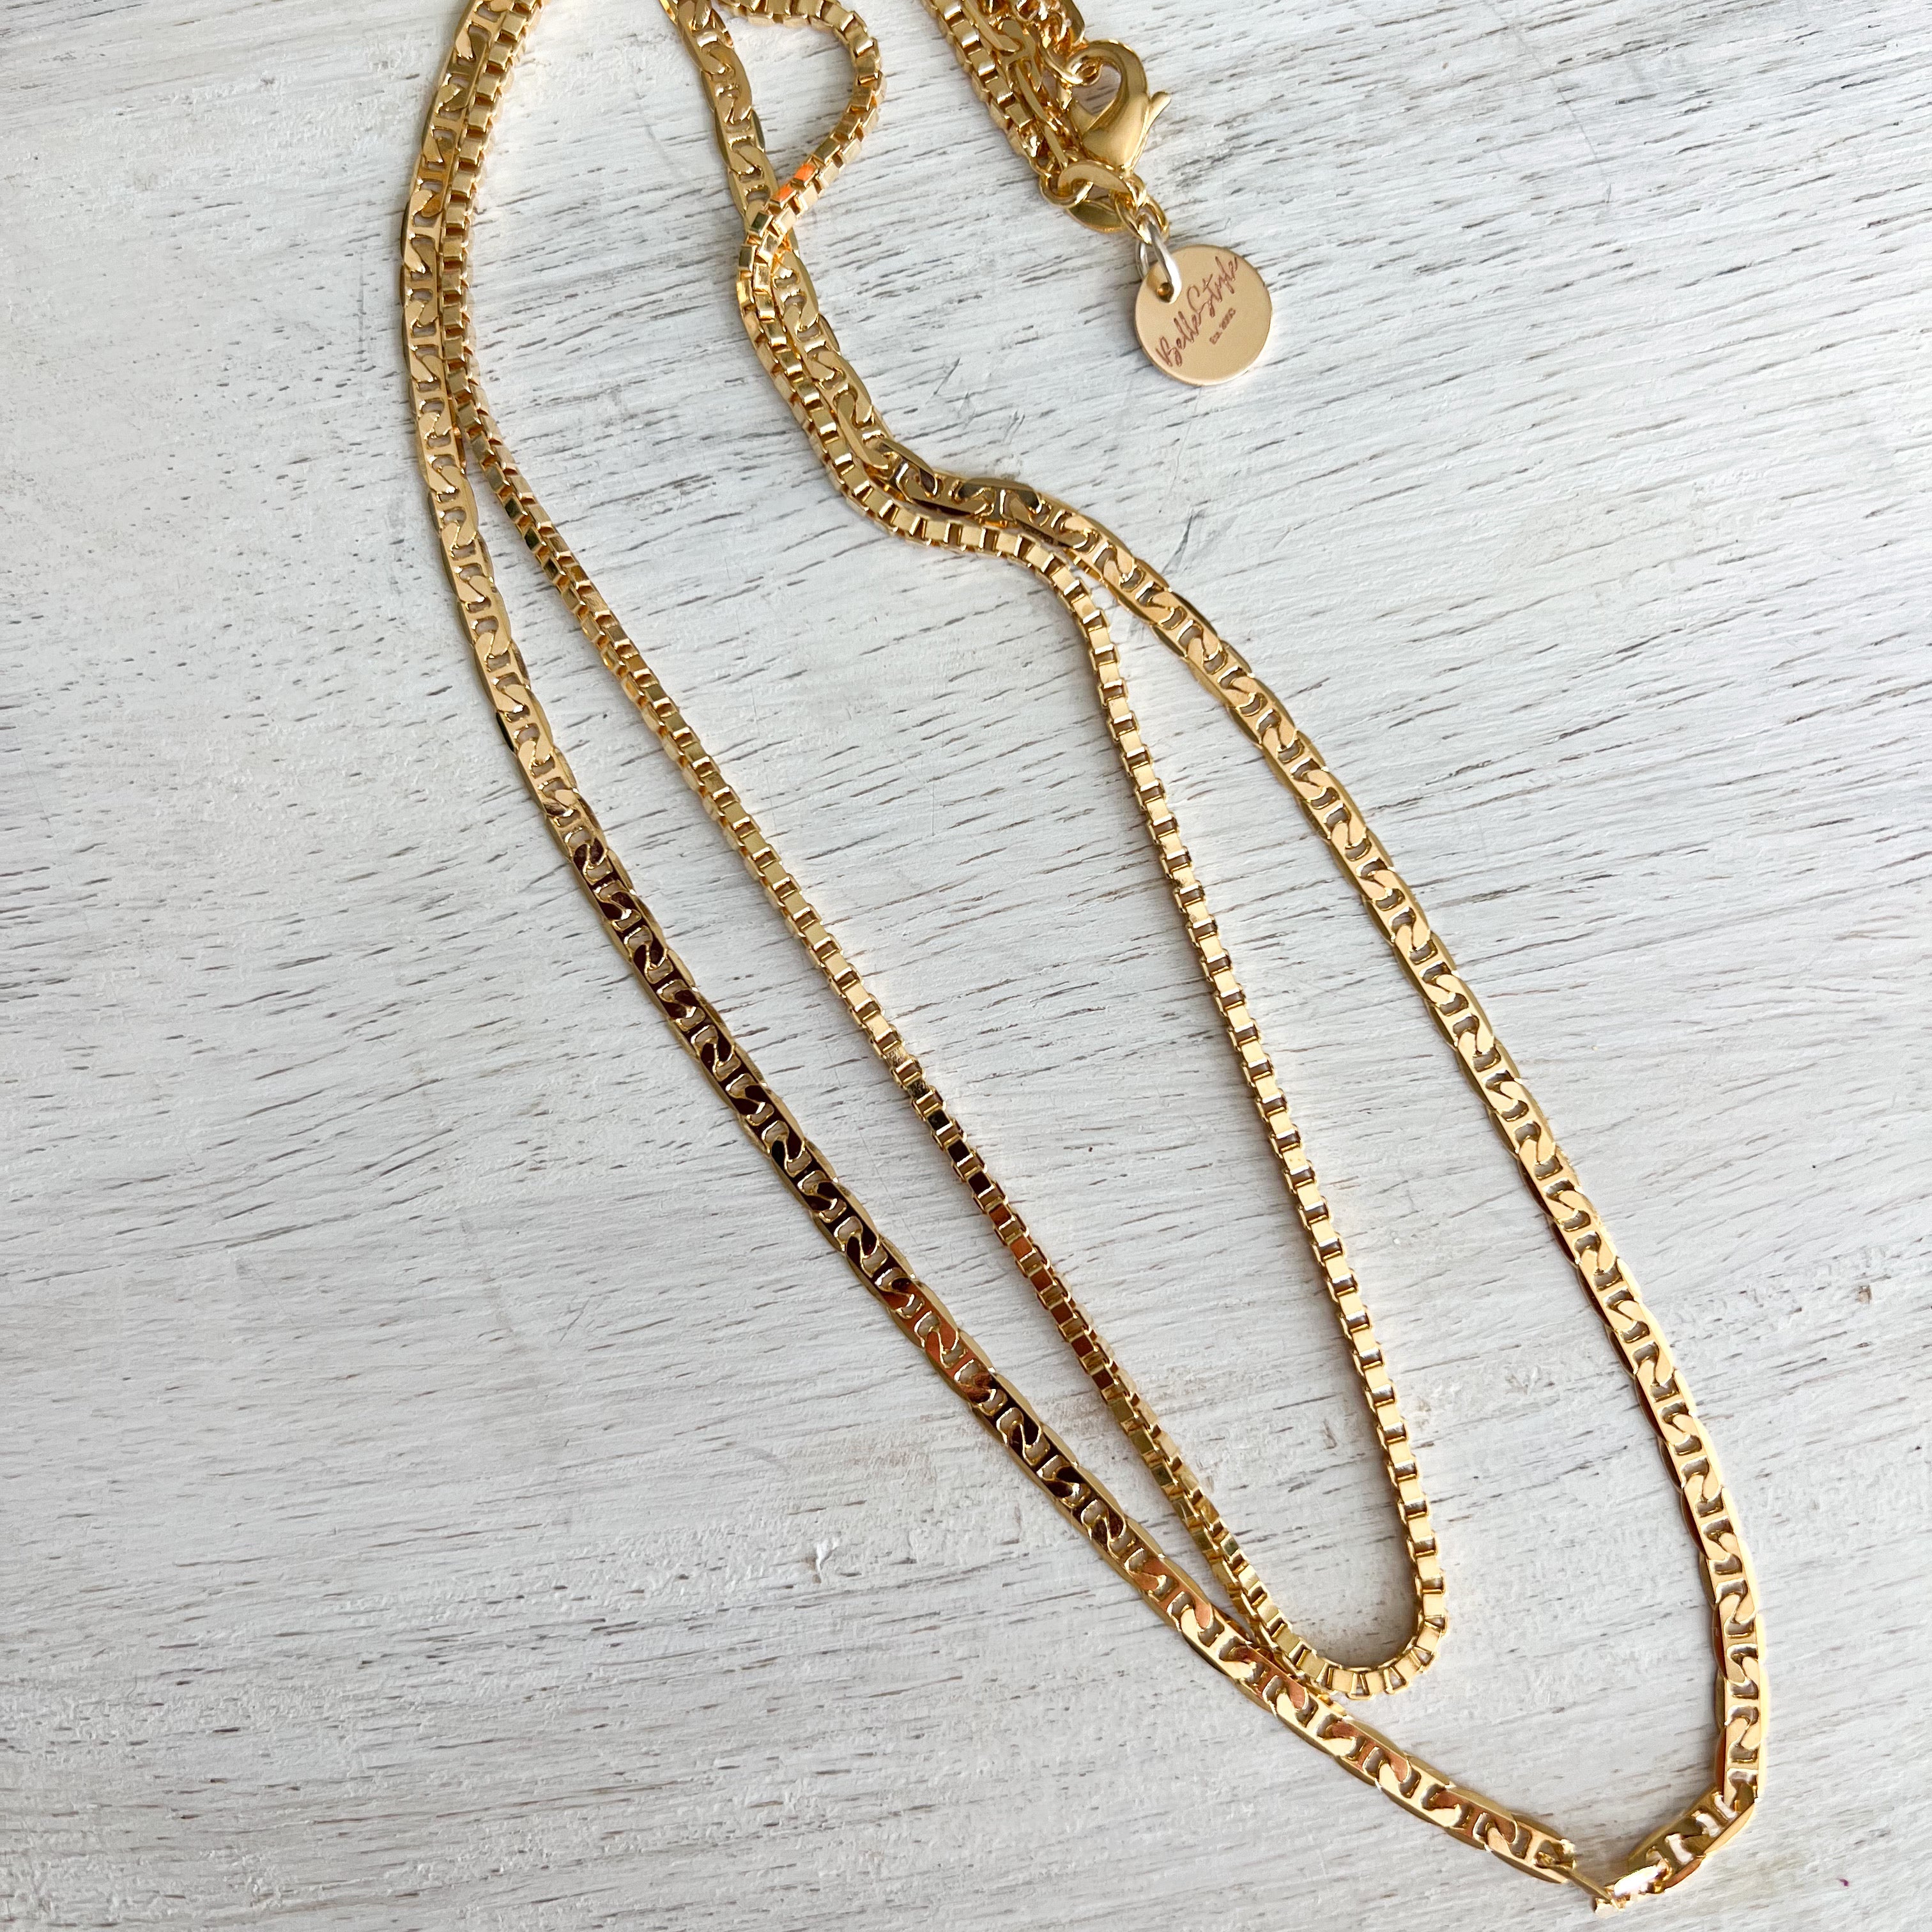 Pavé double chain necklace by Alexander McQueen | Tessabit